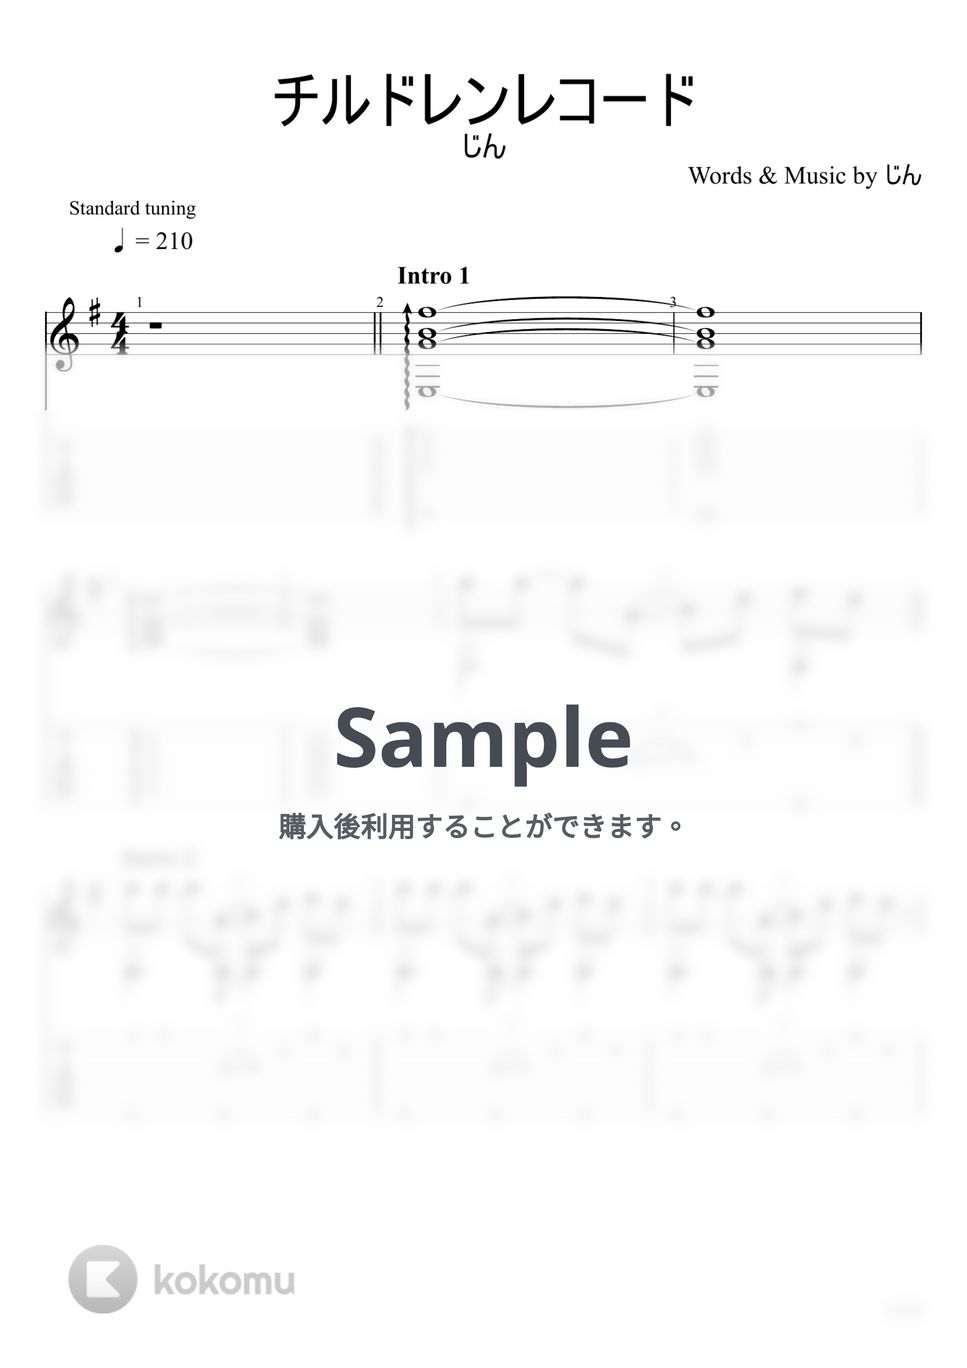 じん - チルドレンレコード (ソロギター) by u3danchou